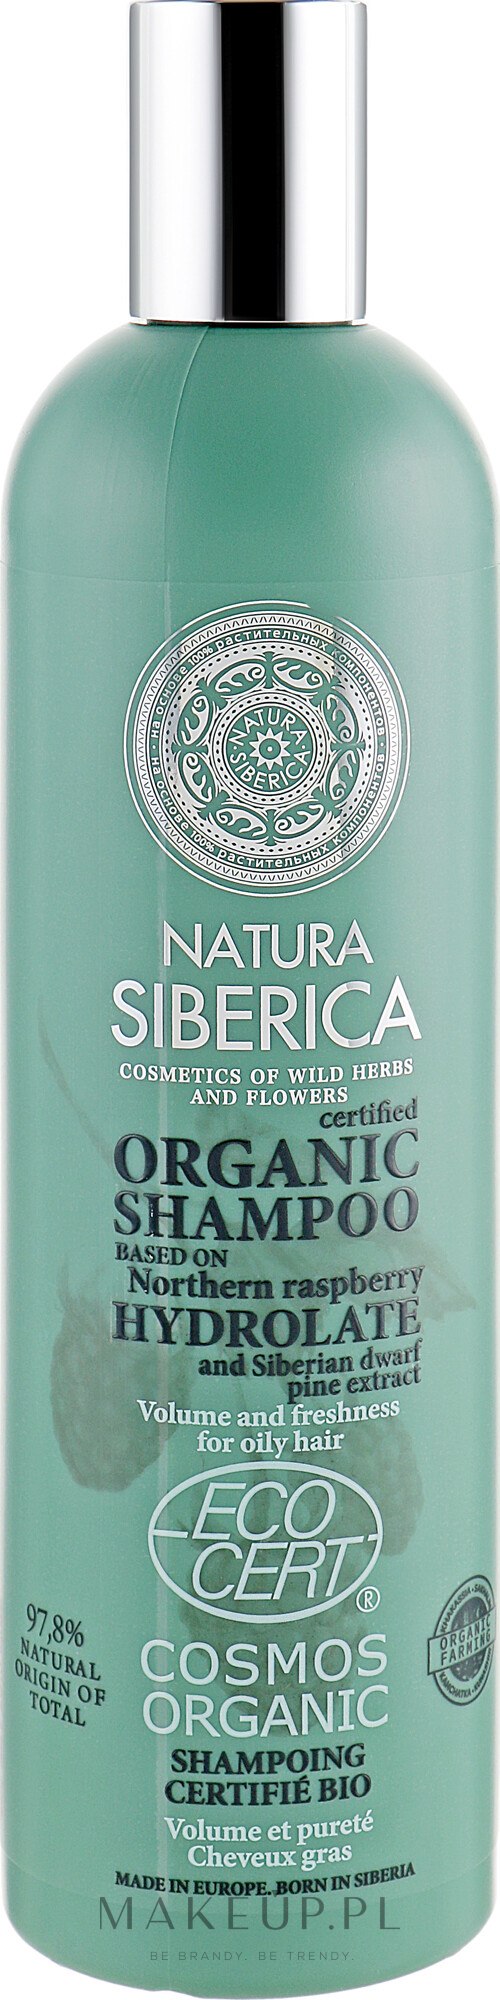 szampon natura siberica do włosów osłabionych ochrona i energia blog